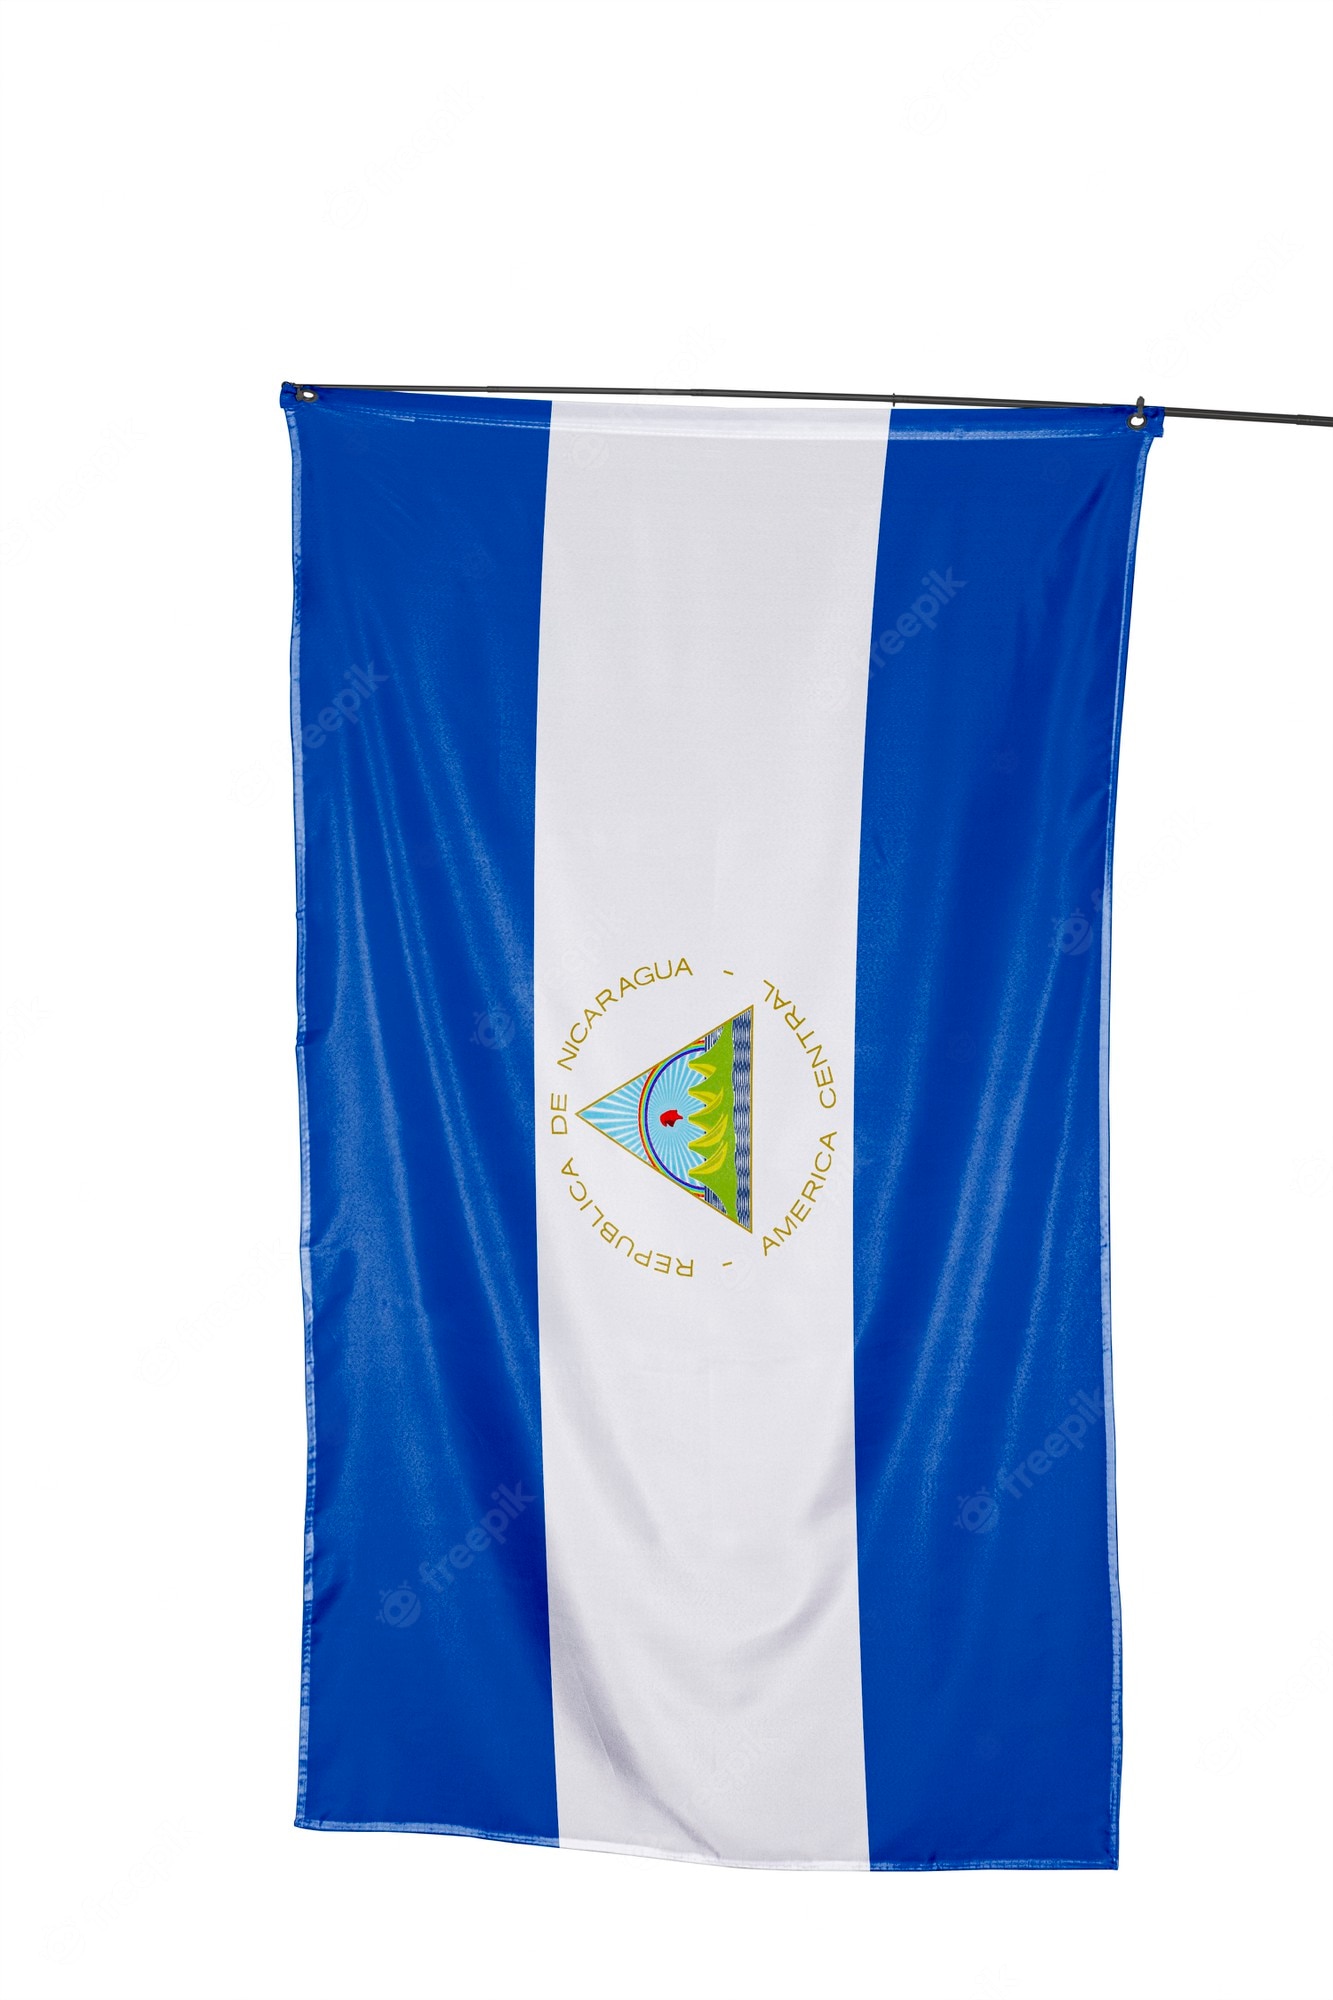 Nicaragua Flag Wallpapers